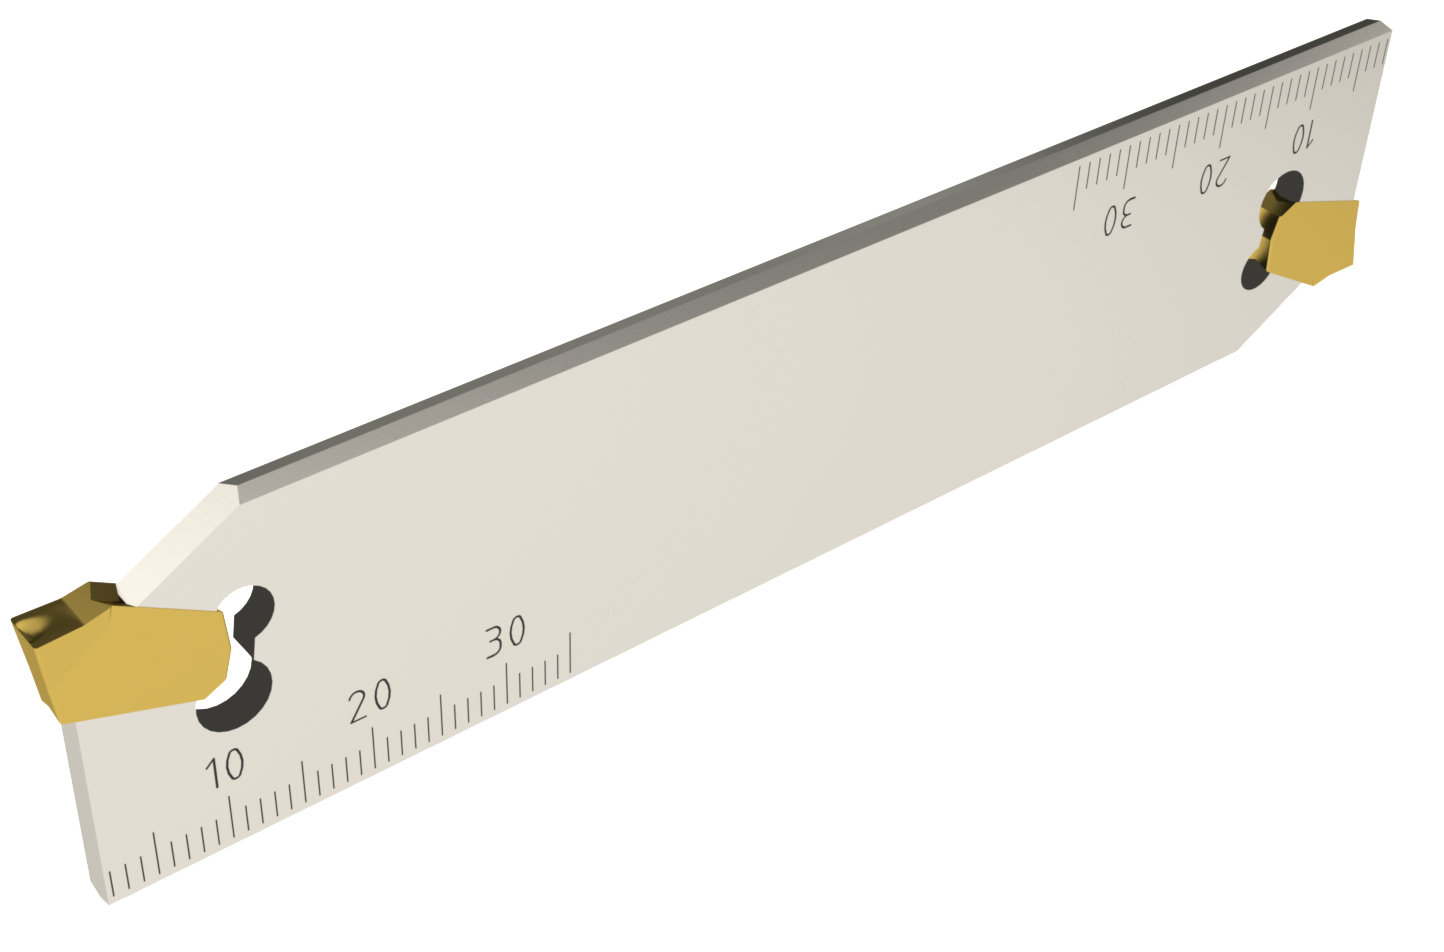 Stechschwert für Stechplatten auf durchsichtigem Hintergrund. In dem Stechschwert sind zwei gelbe Wendeplatten eingelassen. Auf der Oberfläche befinden sich die Zahlen von einem Lineal, um die Distanzen zu messen. Die Zahlen gehen von 10 bis 30.